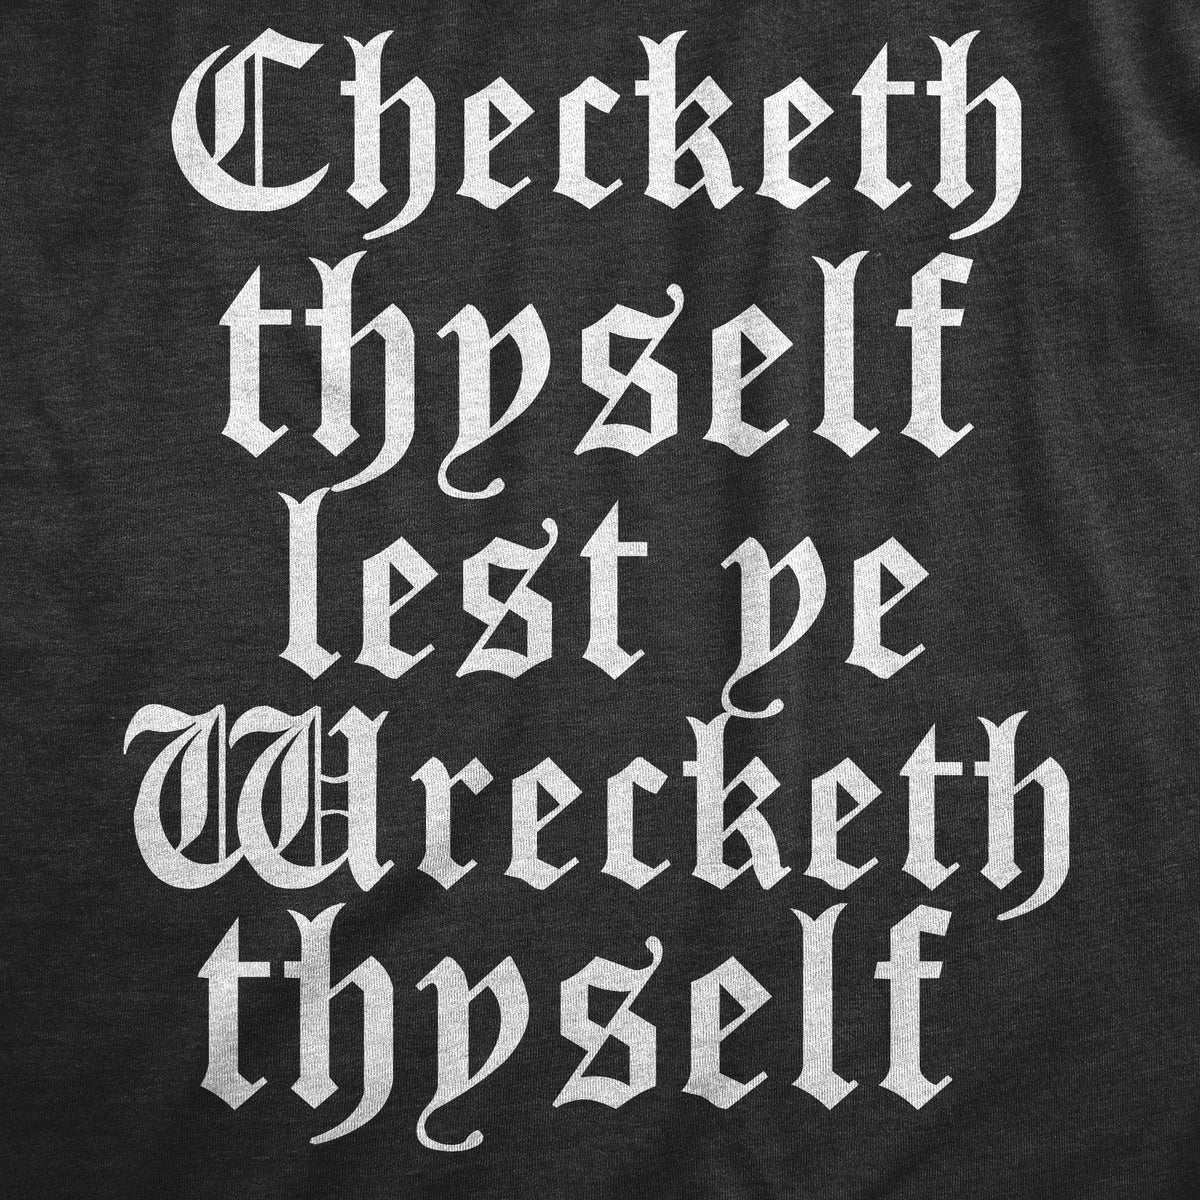 Checketh Thyself Lest Ye Wrecketh Thyself Women&#39;s Tshirt  -  Crazy Dog T-Shirts